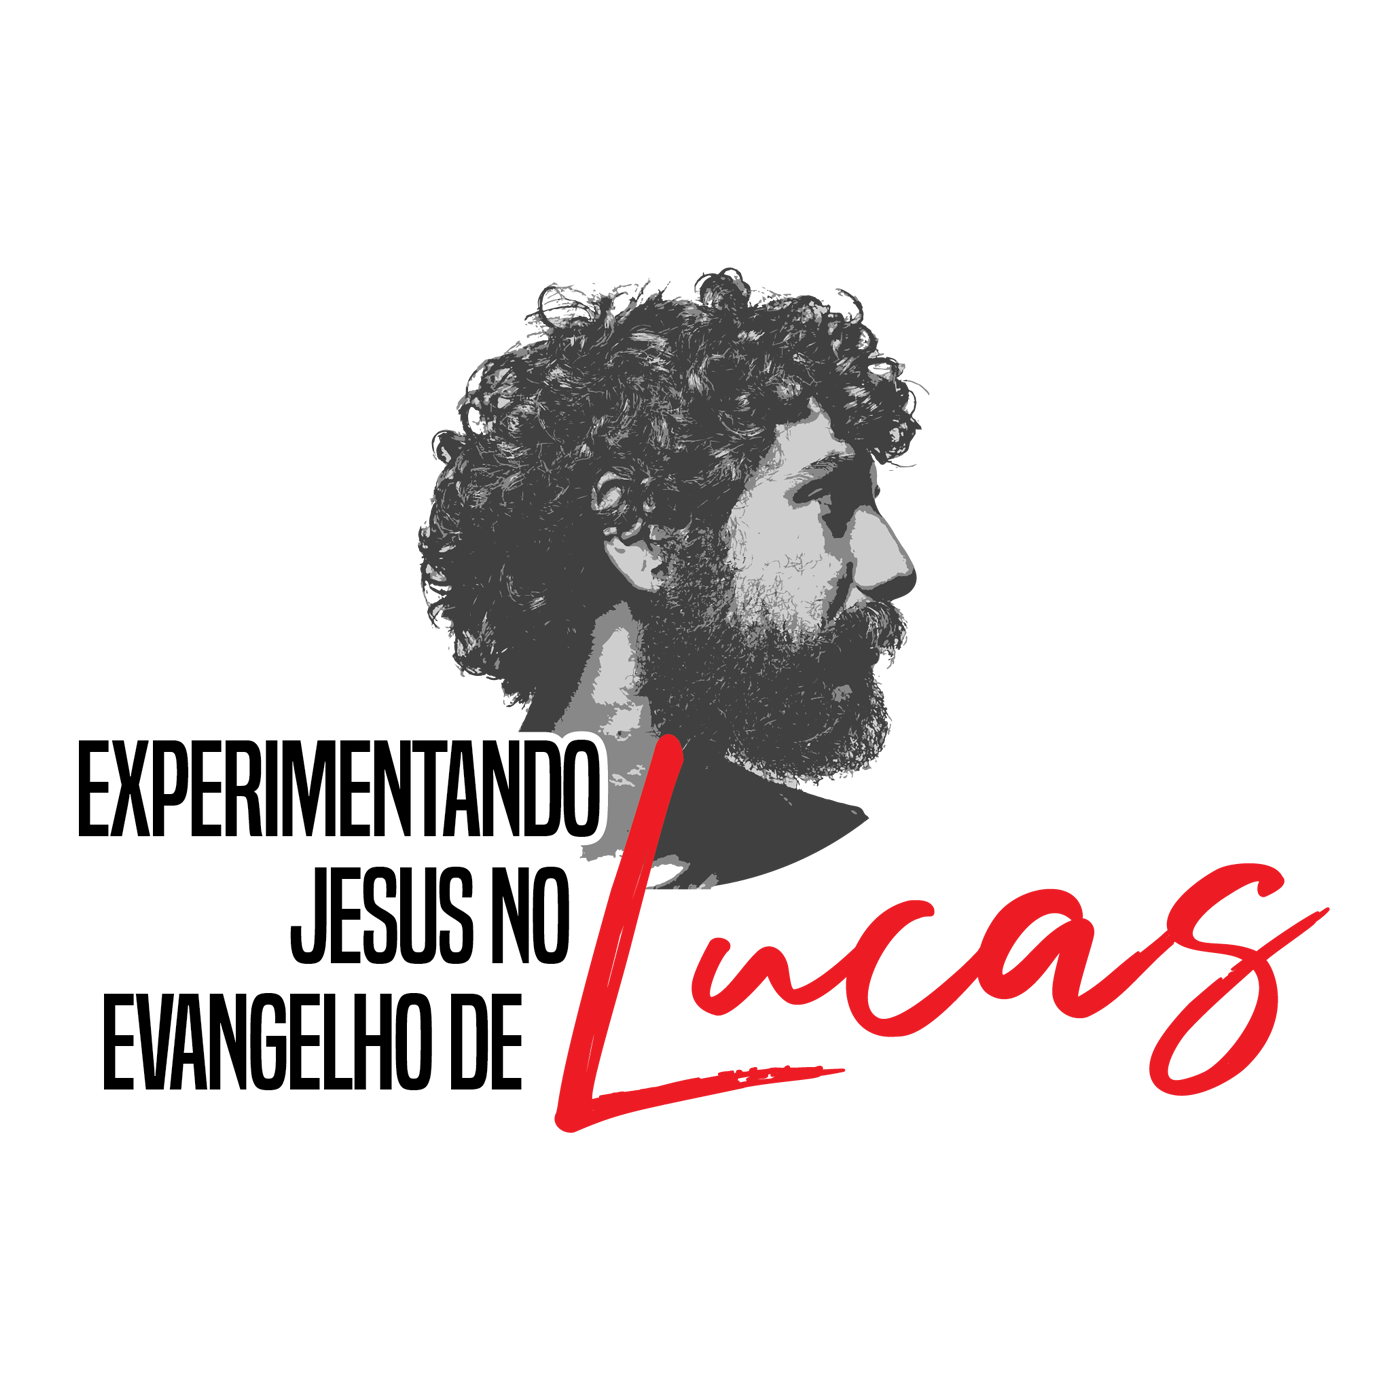 Lucas 6:36